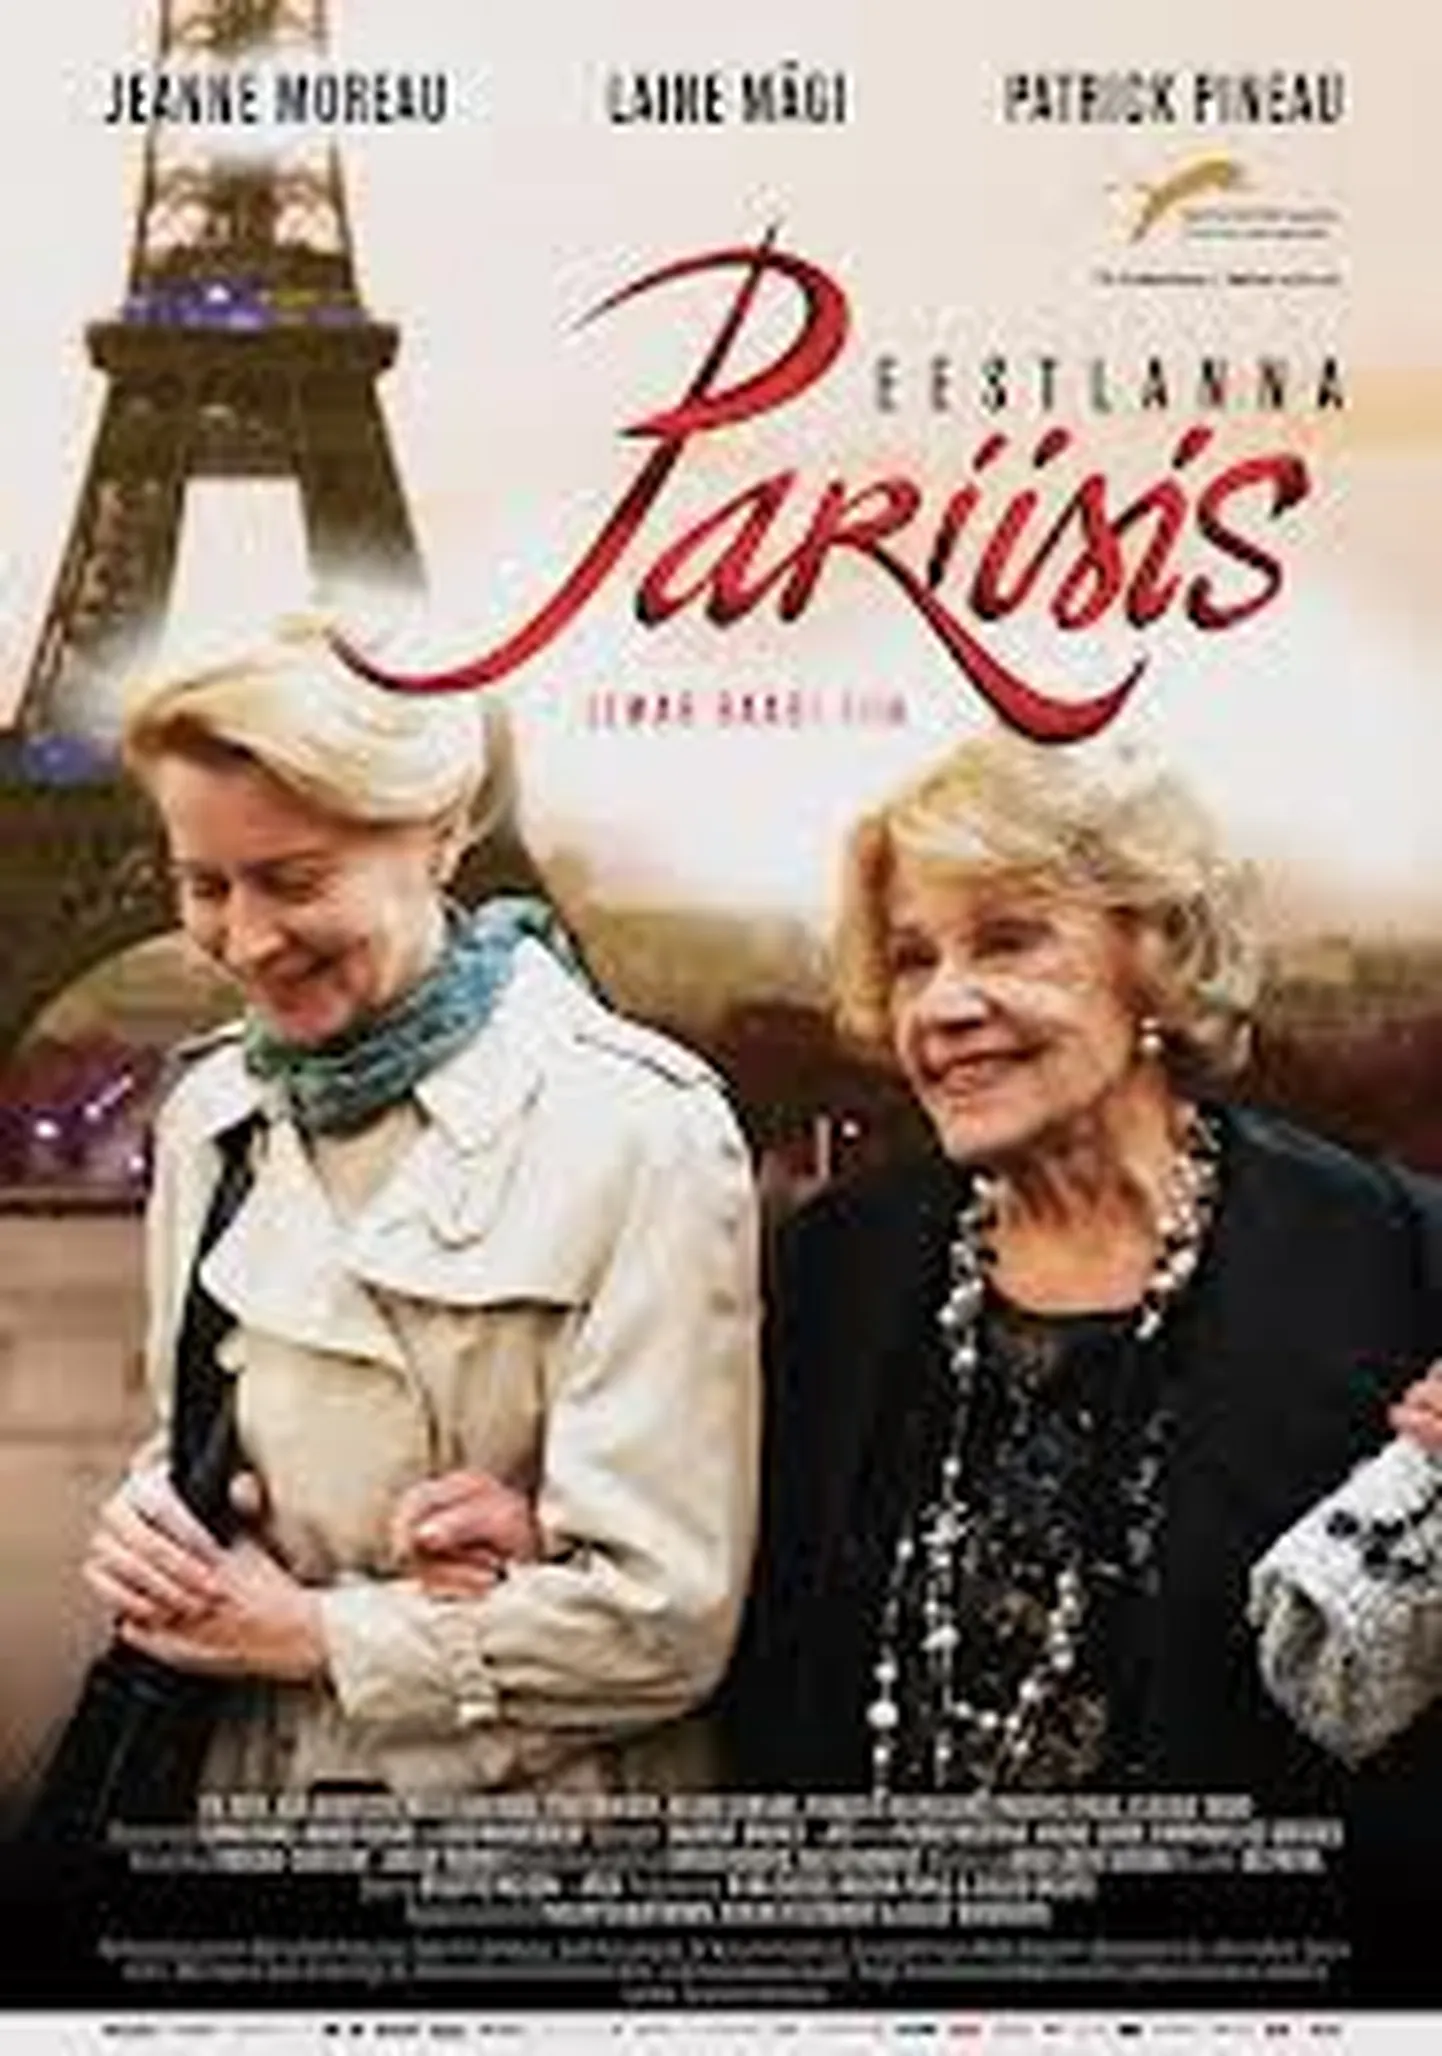 Filmi "Eestlanna Pariisis" plakat.